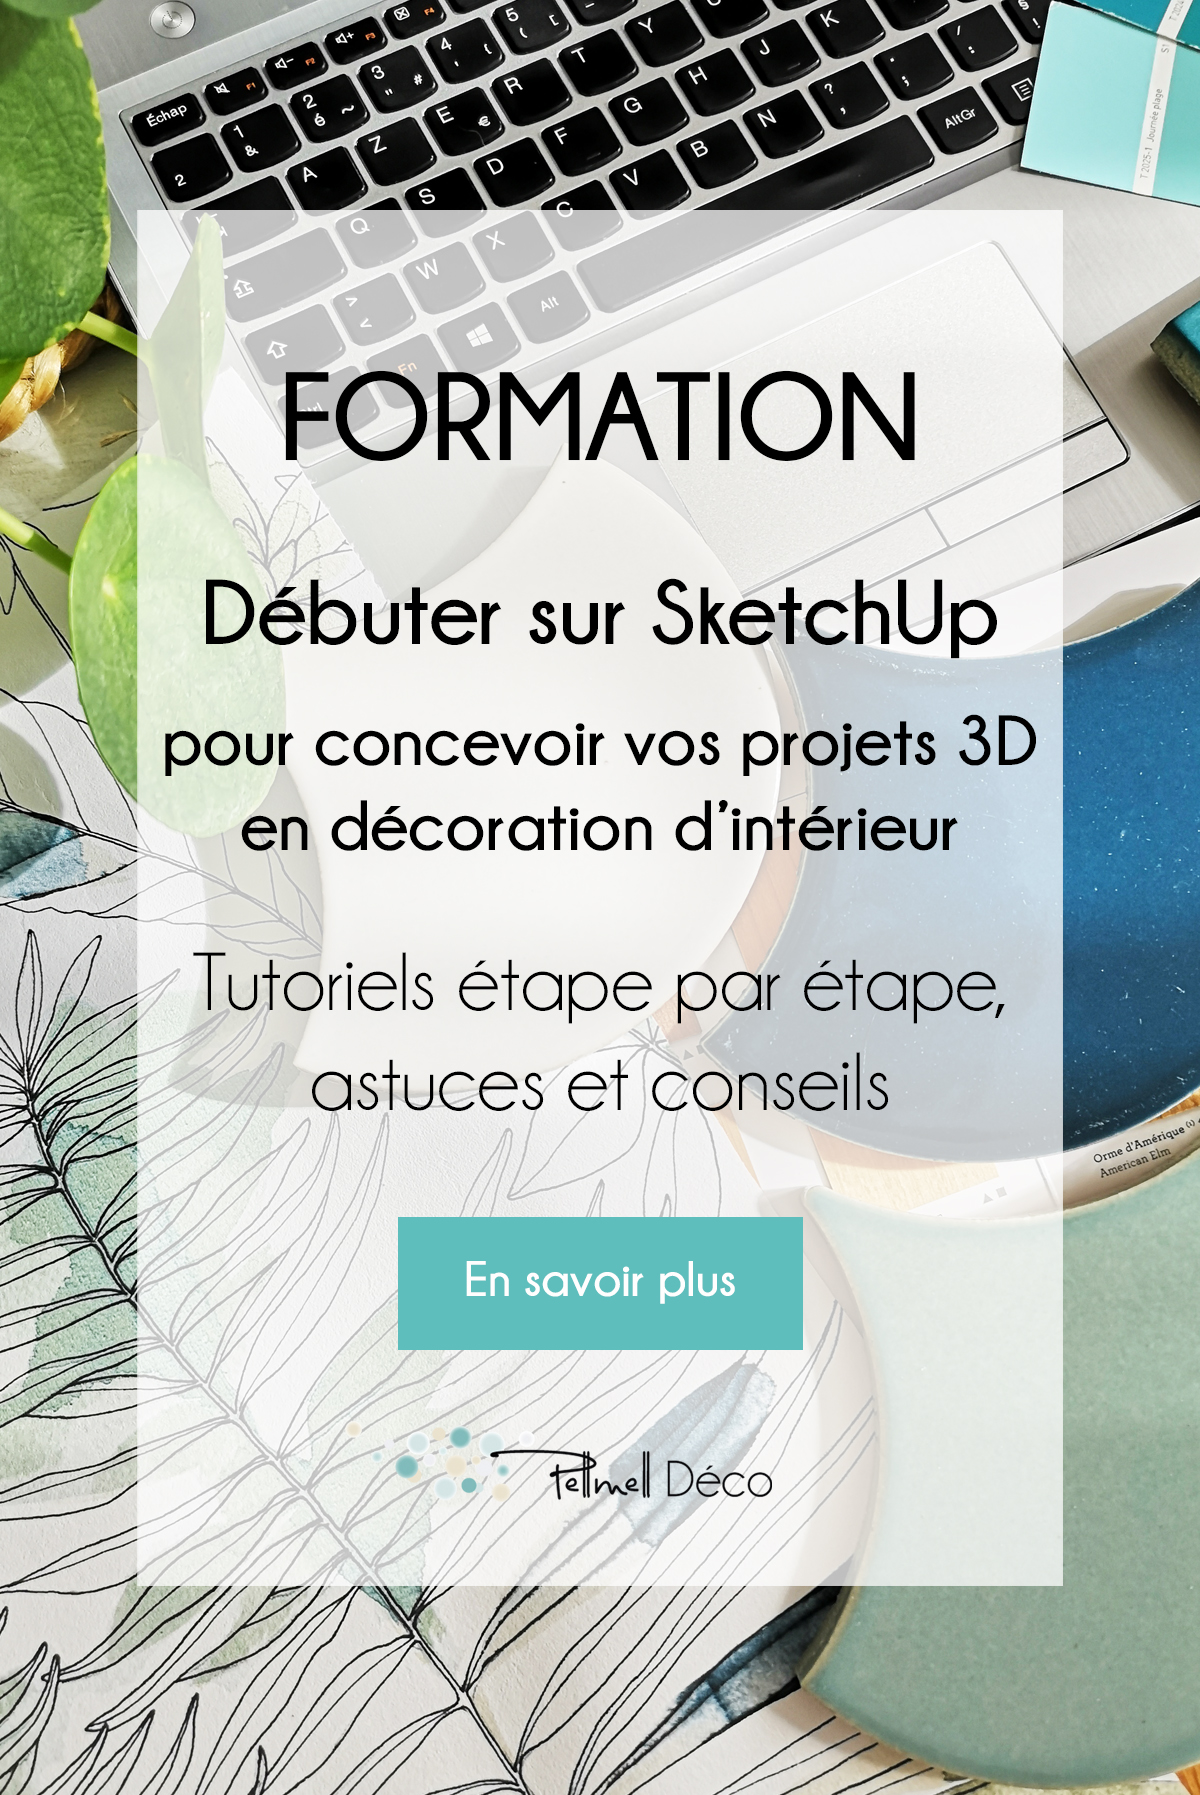 Formation Débuter sur SketchUp pour concevoir vos projets 3D en décoration d'intérieur